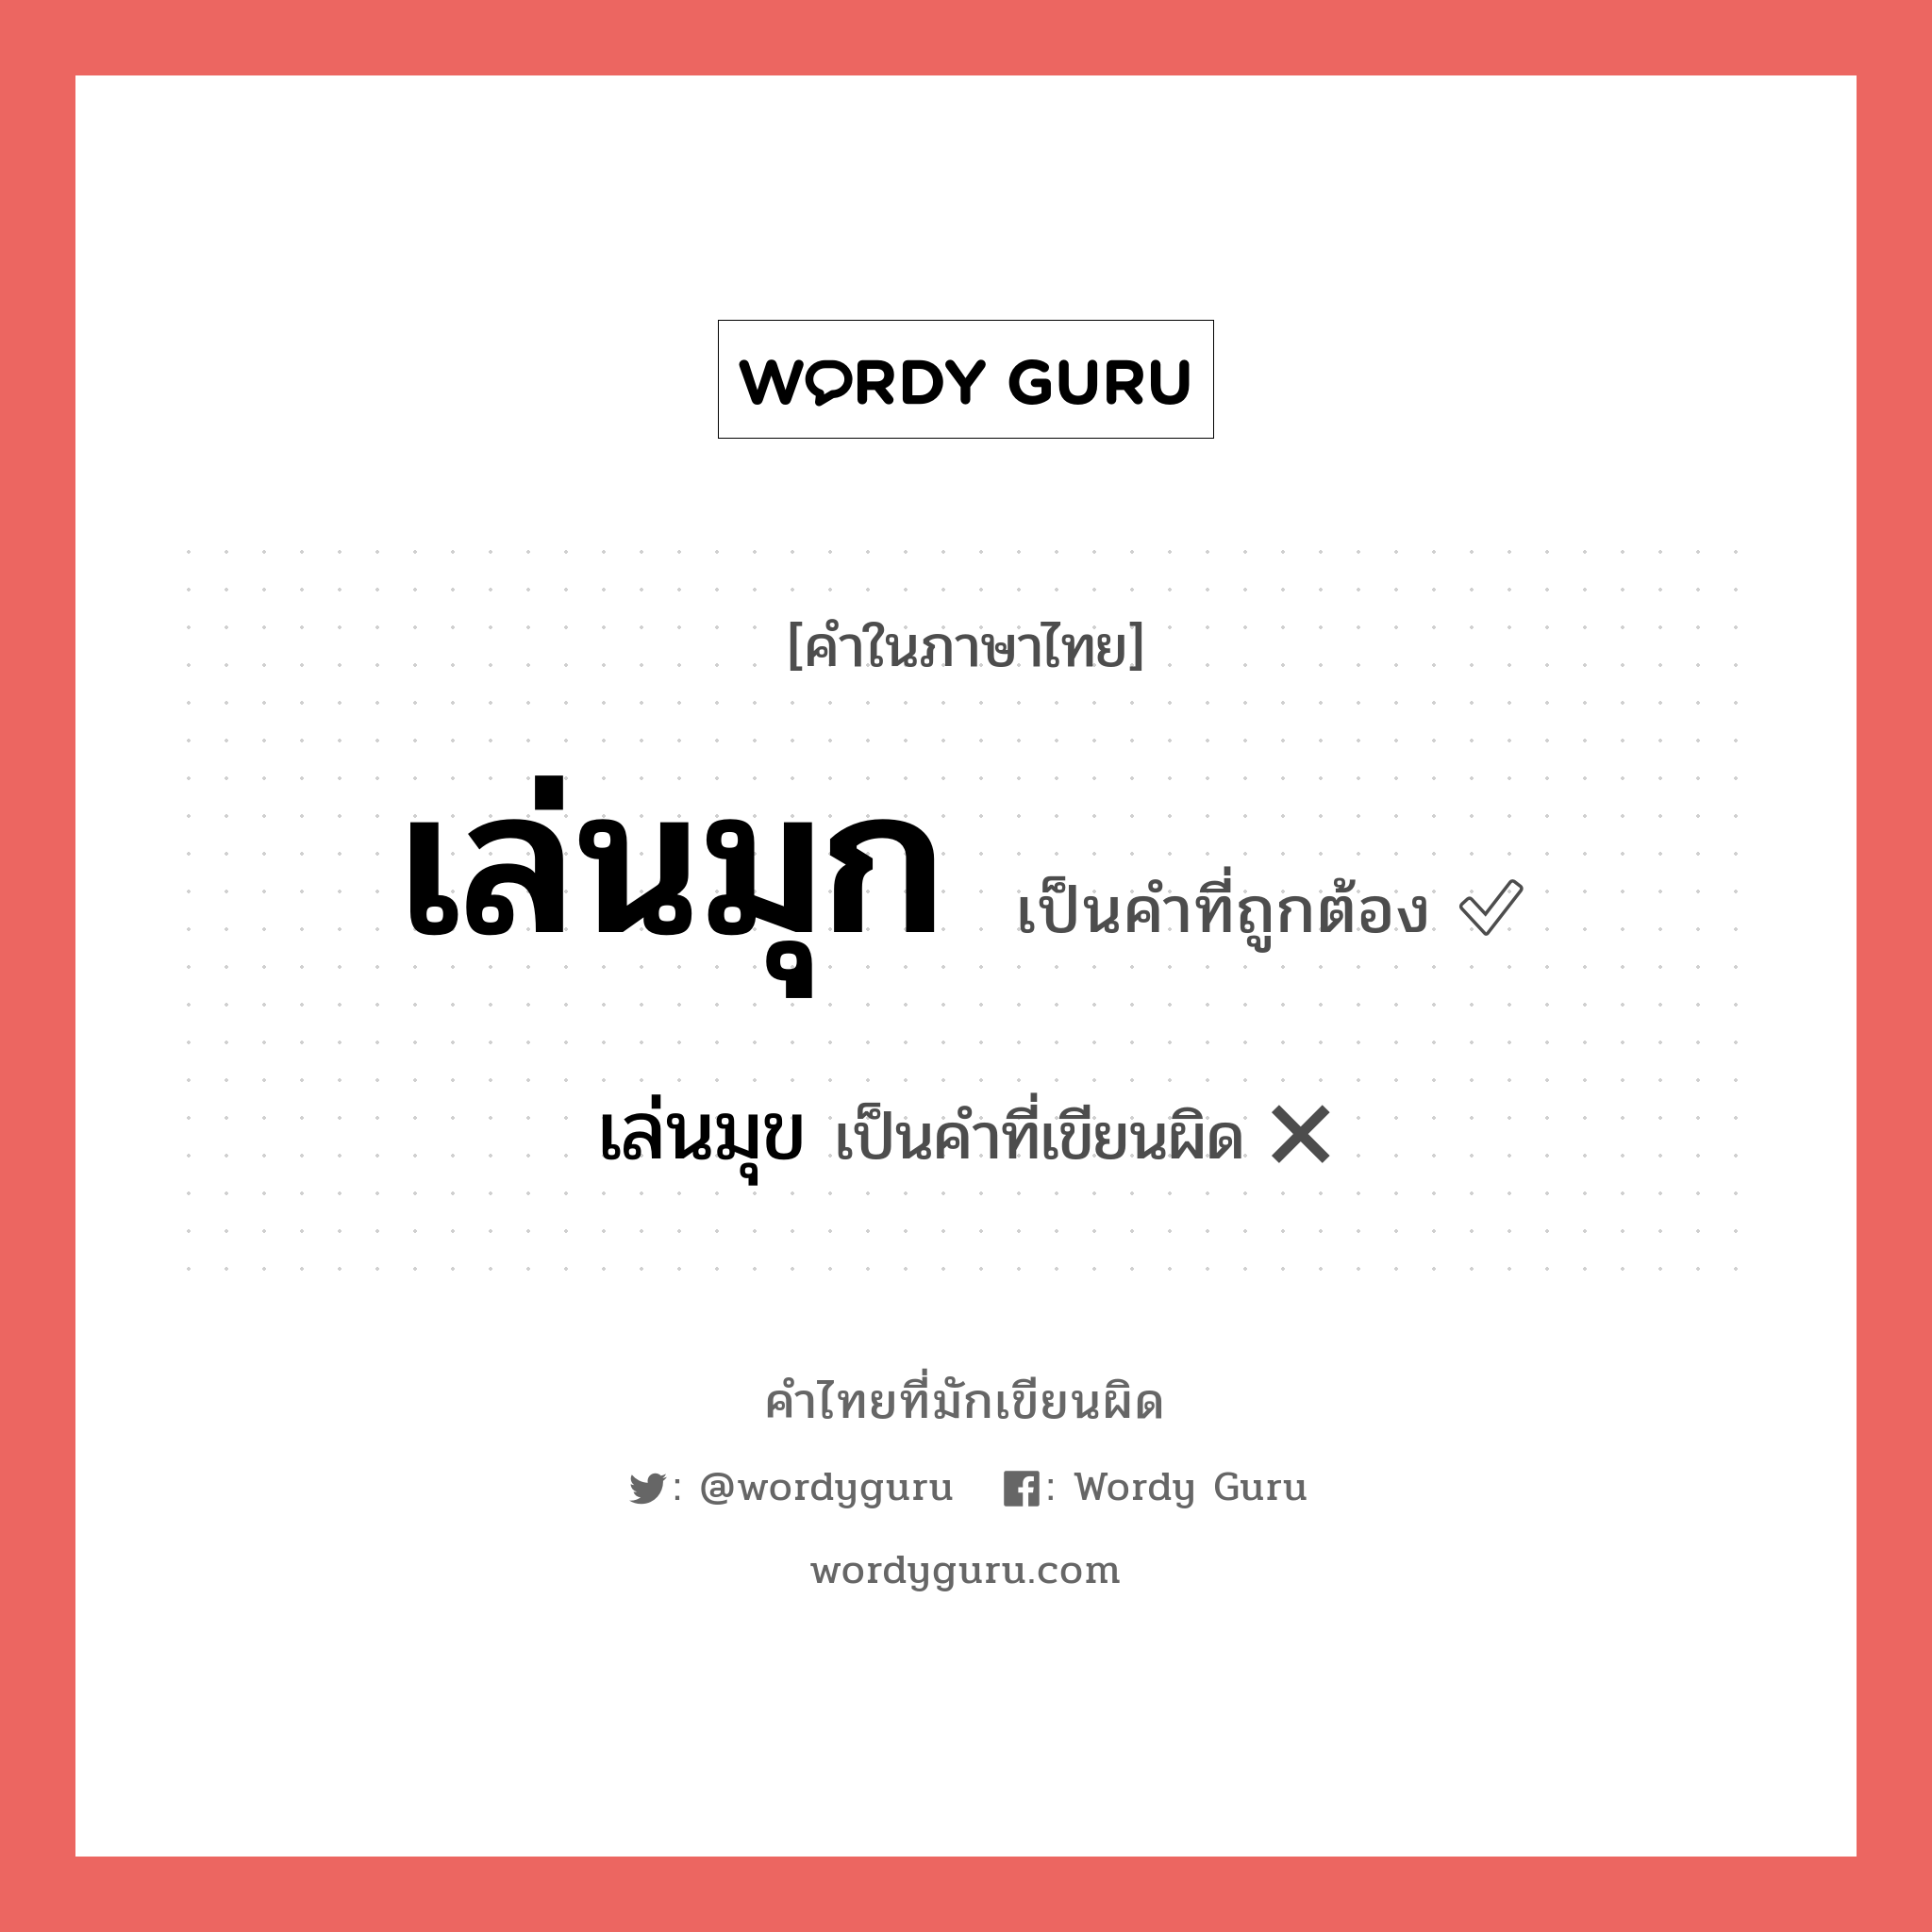 เล่นมุข หรือ เล่นมุก คำไหนเขียนถูก?, คำในภาษาไทยที่มักเขียนผิด เล่นมุข คำที่ผิด ❌ เล่นมุก